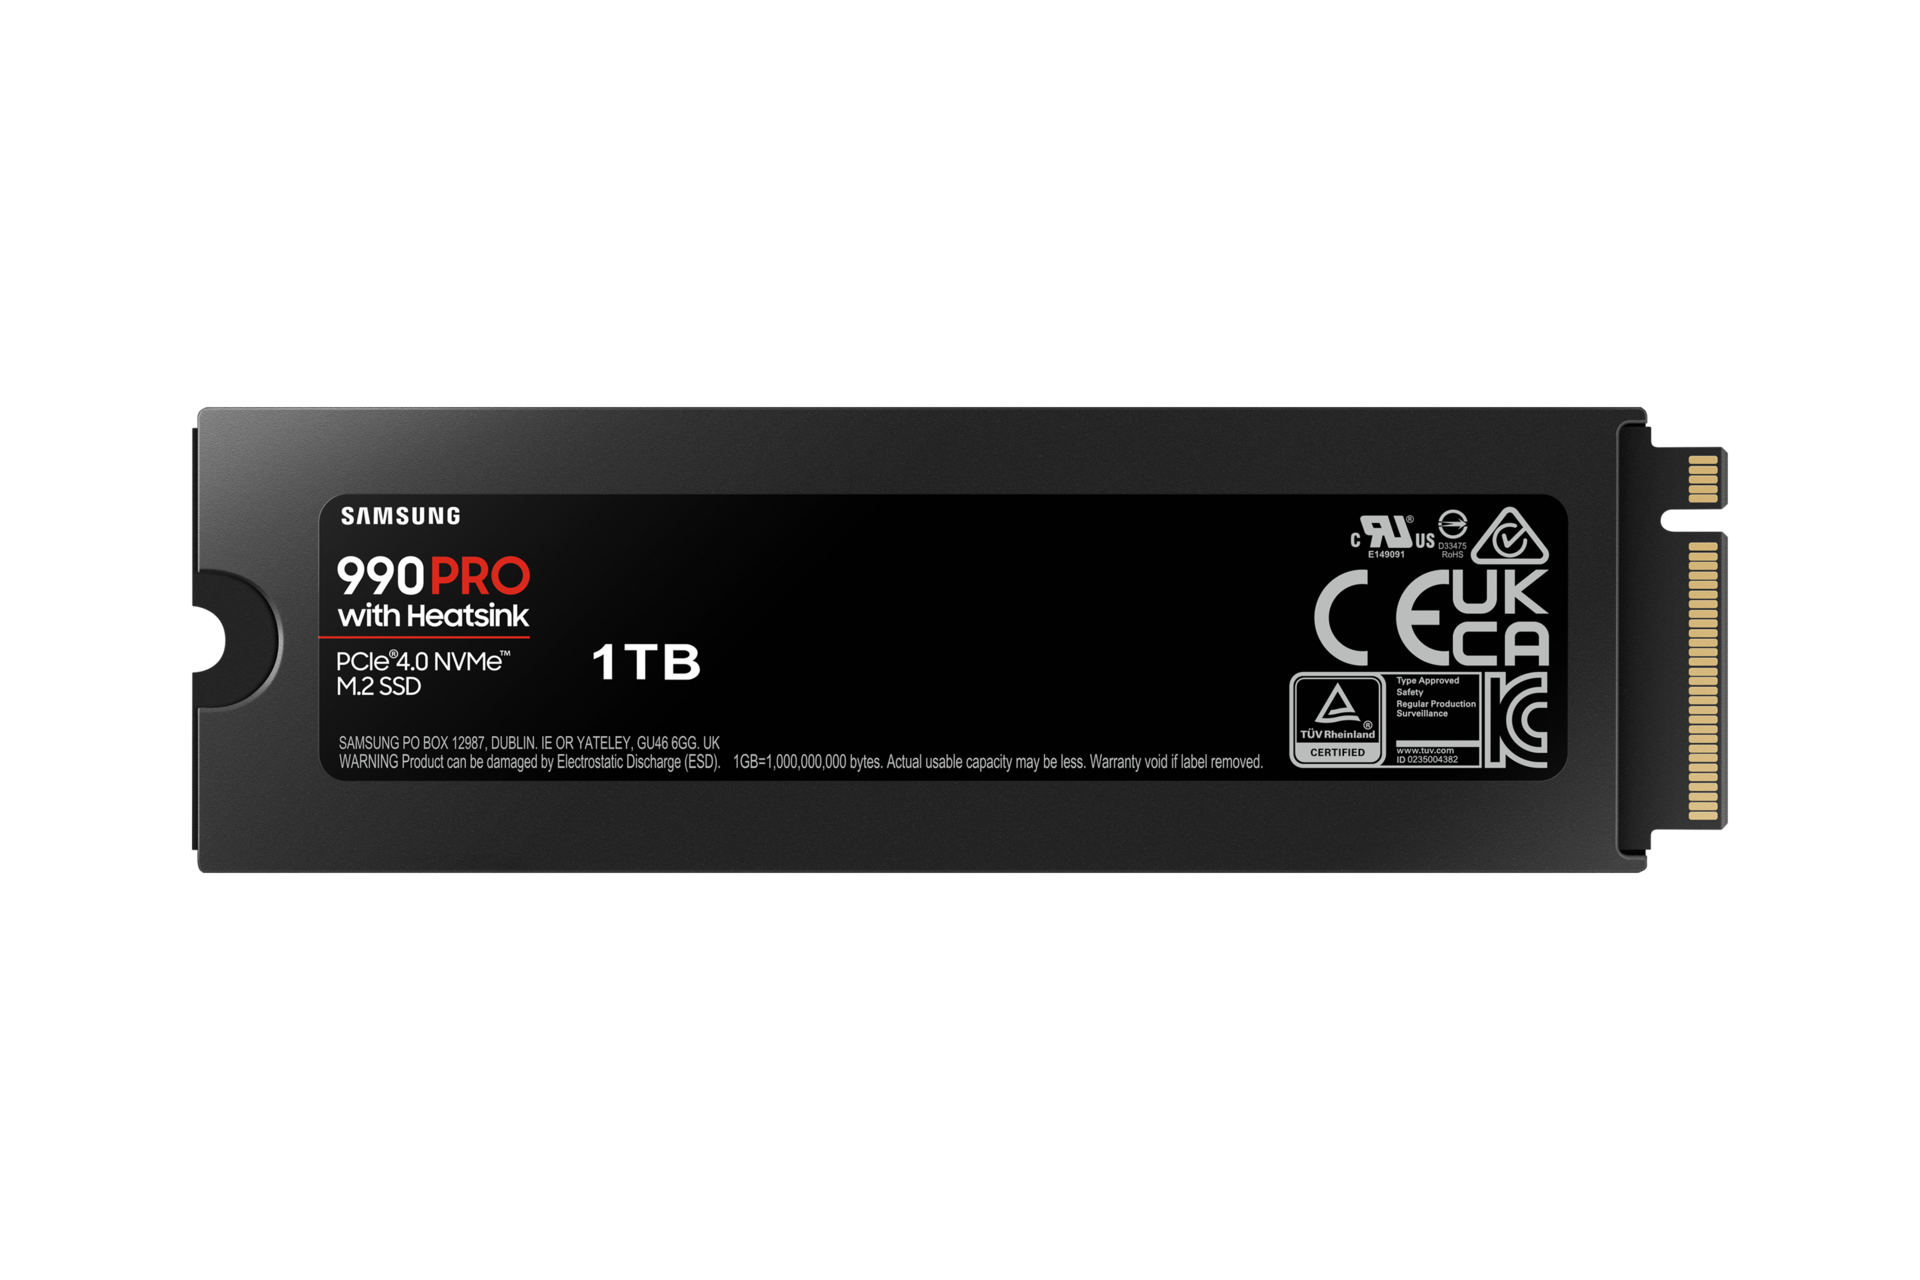 Samsung SSD Interne 990 PRO avec dissipateur, NVMe M.2 PCle 4.0, 4 To,  Vitesse de lecture jusqu'à 7 450 Mo/s, Gestion Intelligente de la chaleur